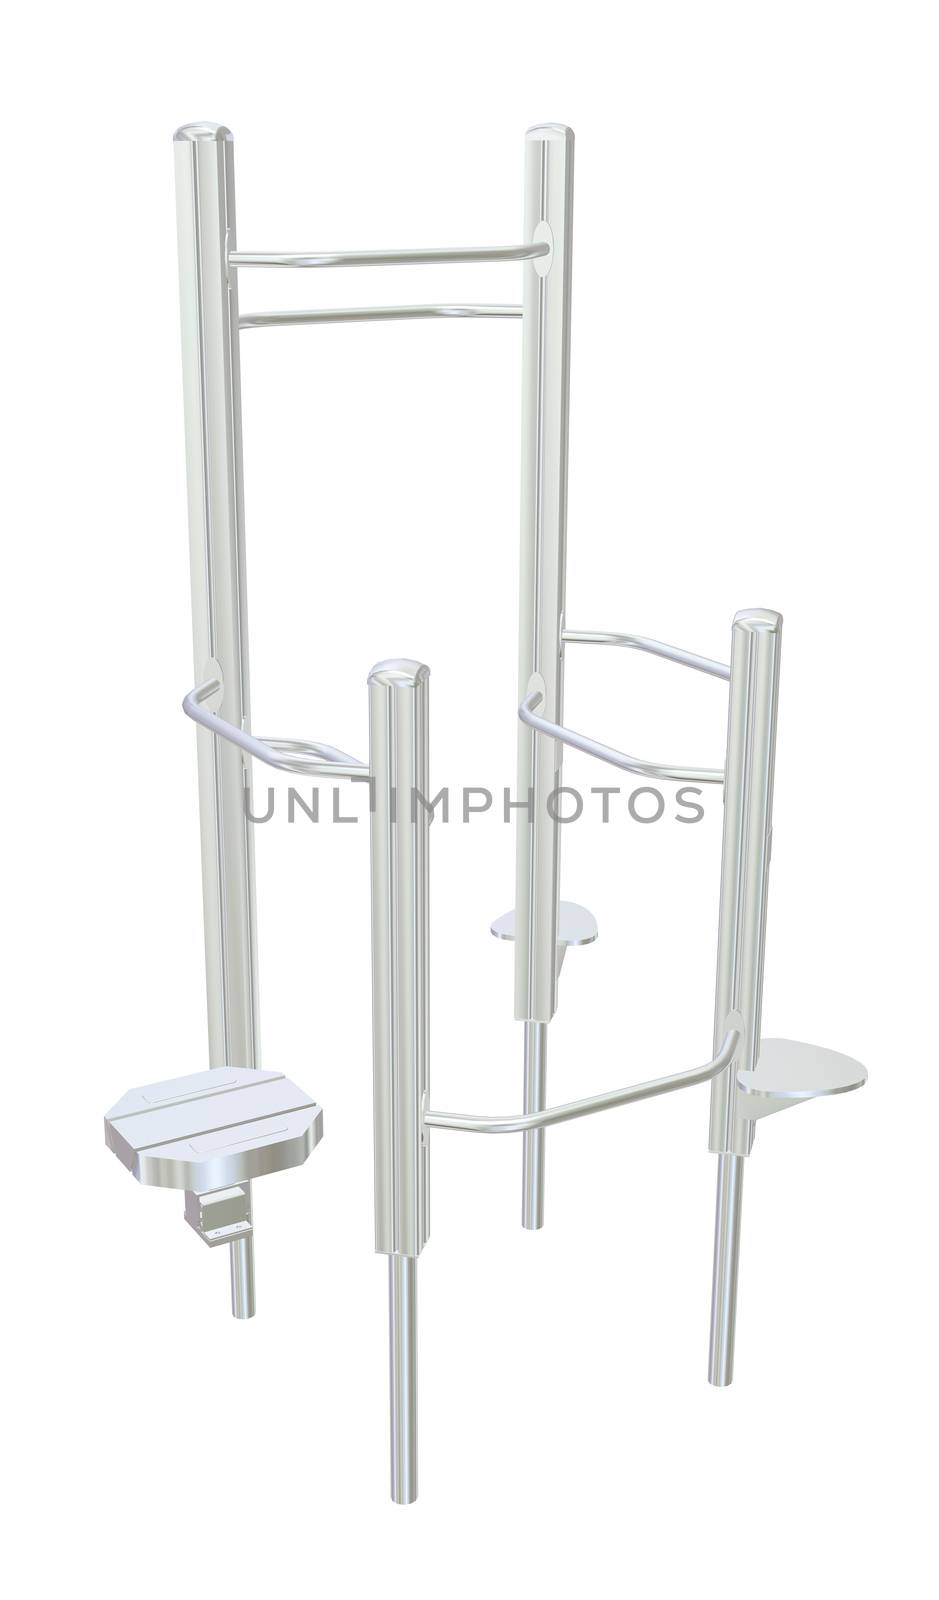 Pull-up bars or shower rack, 3D illustration by Morphart